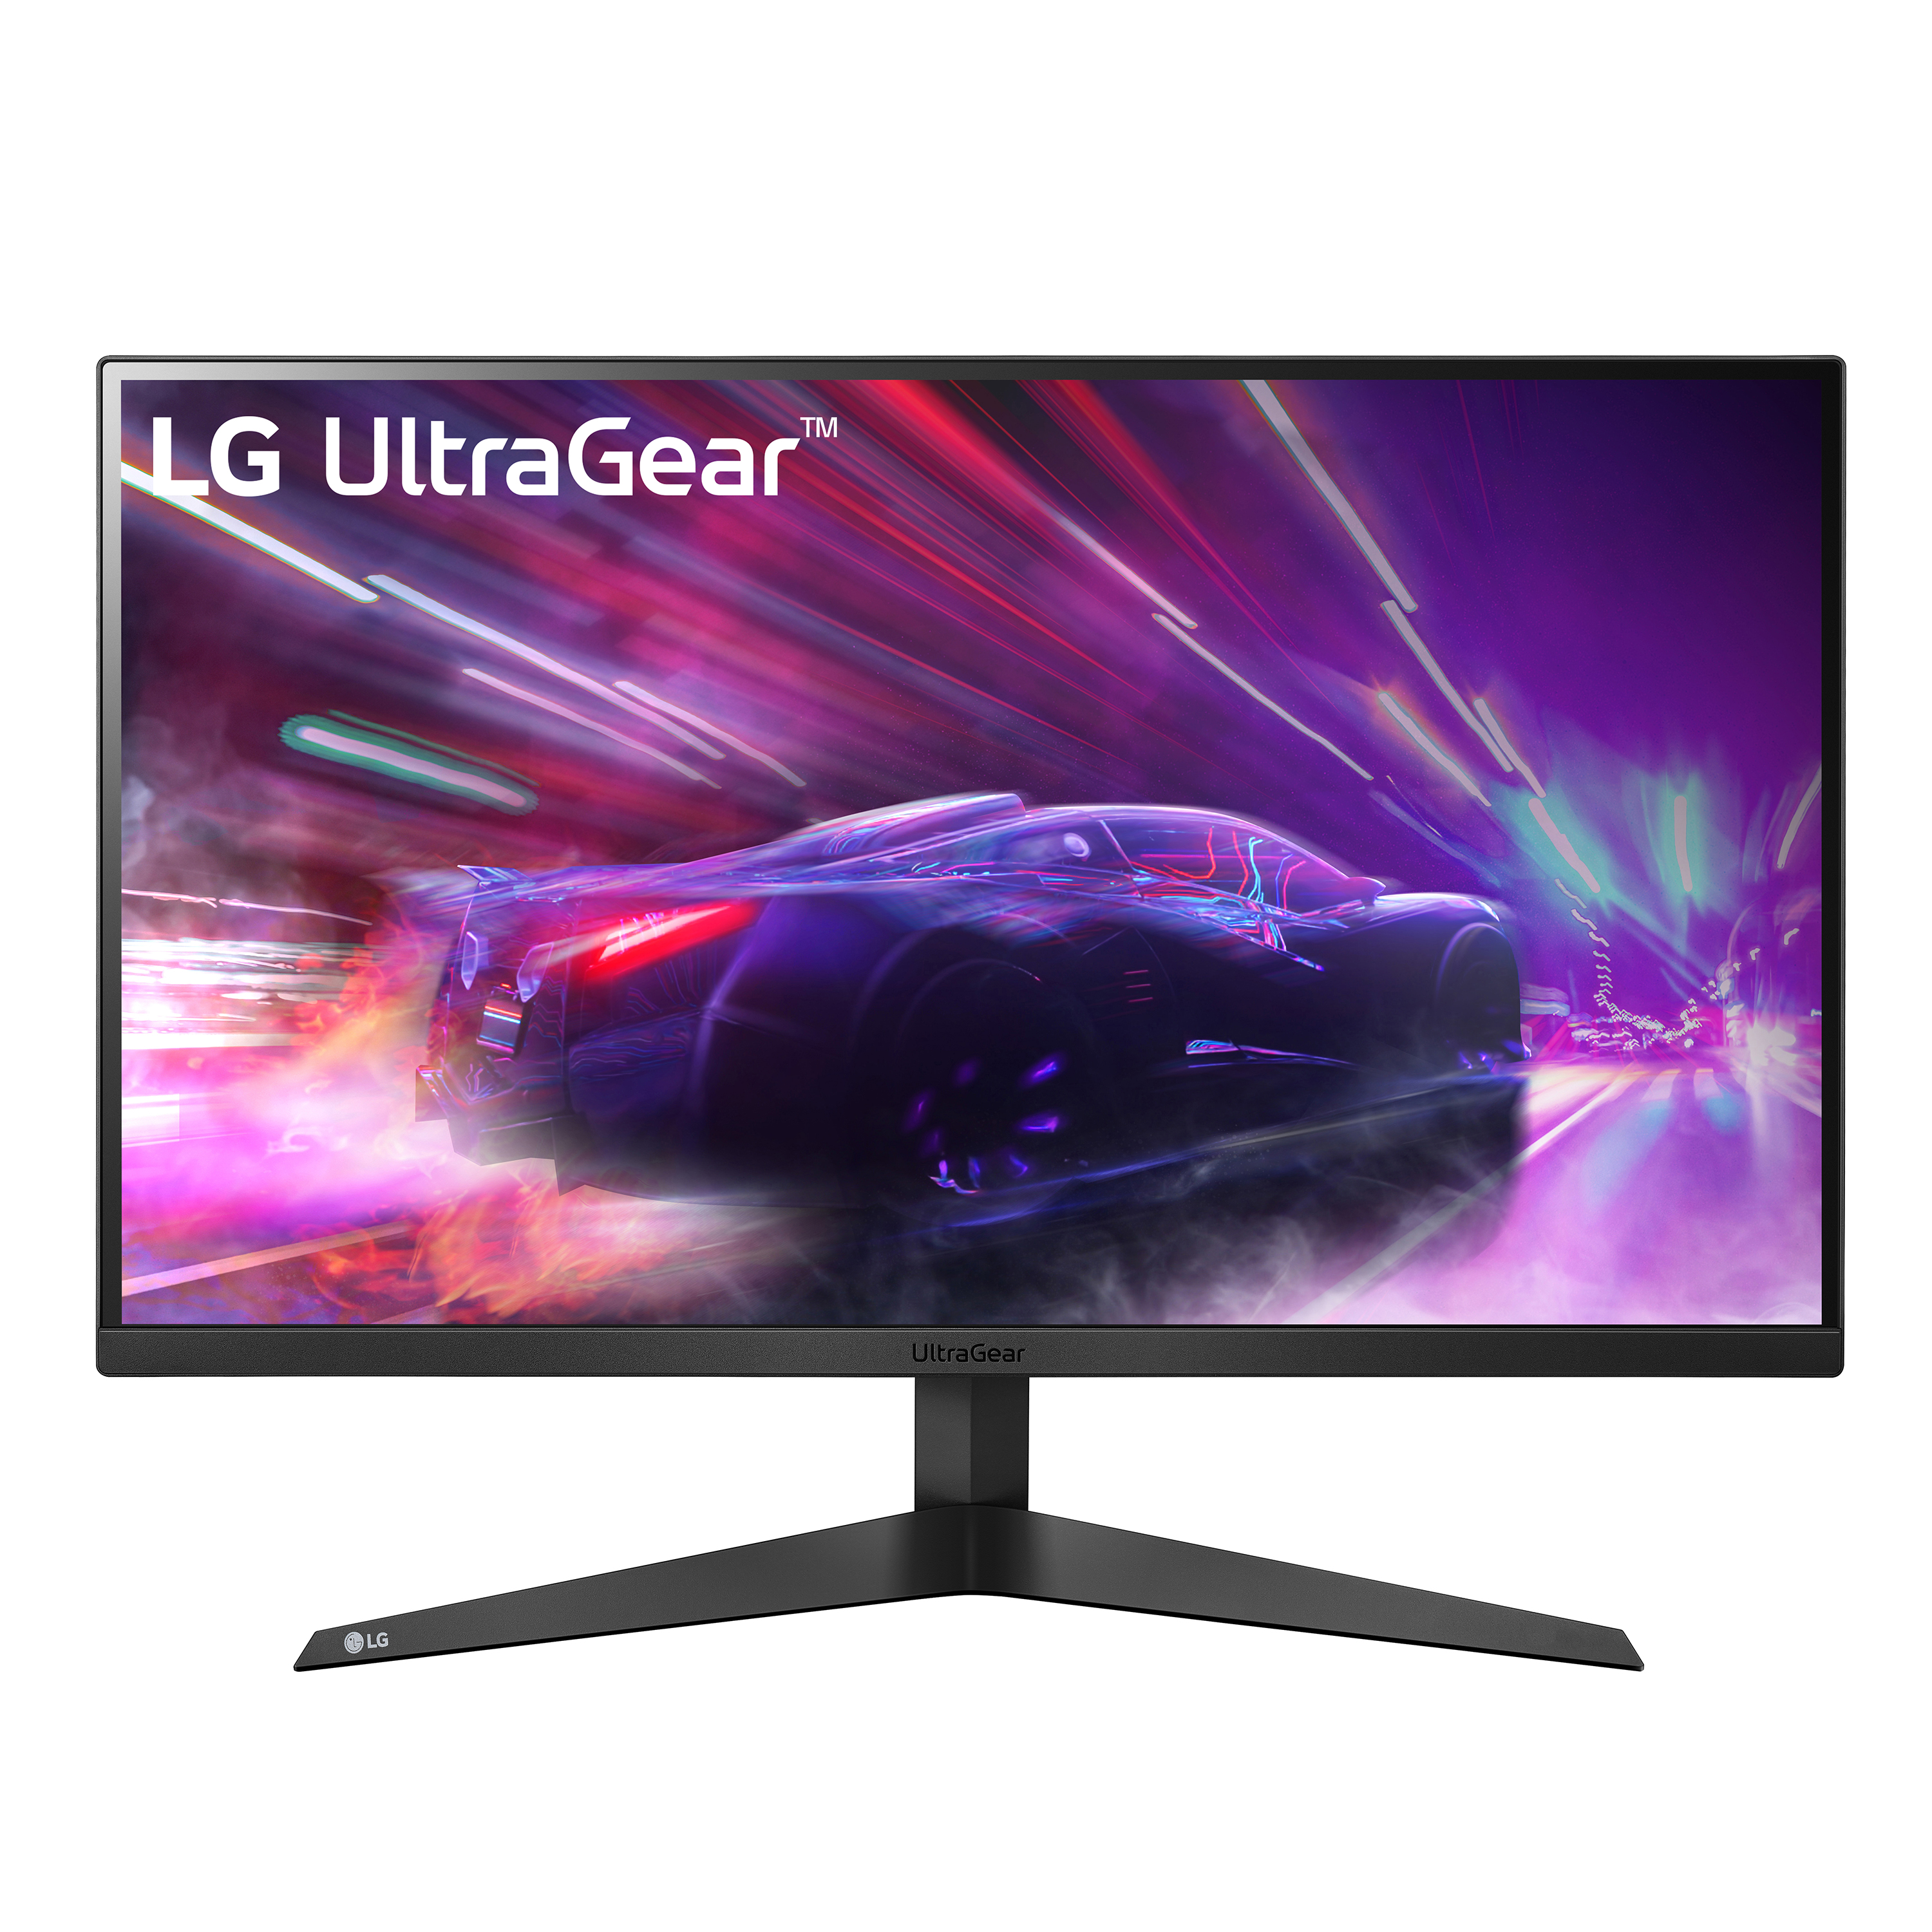 LG 27” UltraGear FHD 1ms 165Hz Gaming Monitor with AMD FreeSync™ Premium & Black Stabilizer (1920 x 1080) - 27GQ40W-B - image 1 of 10